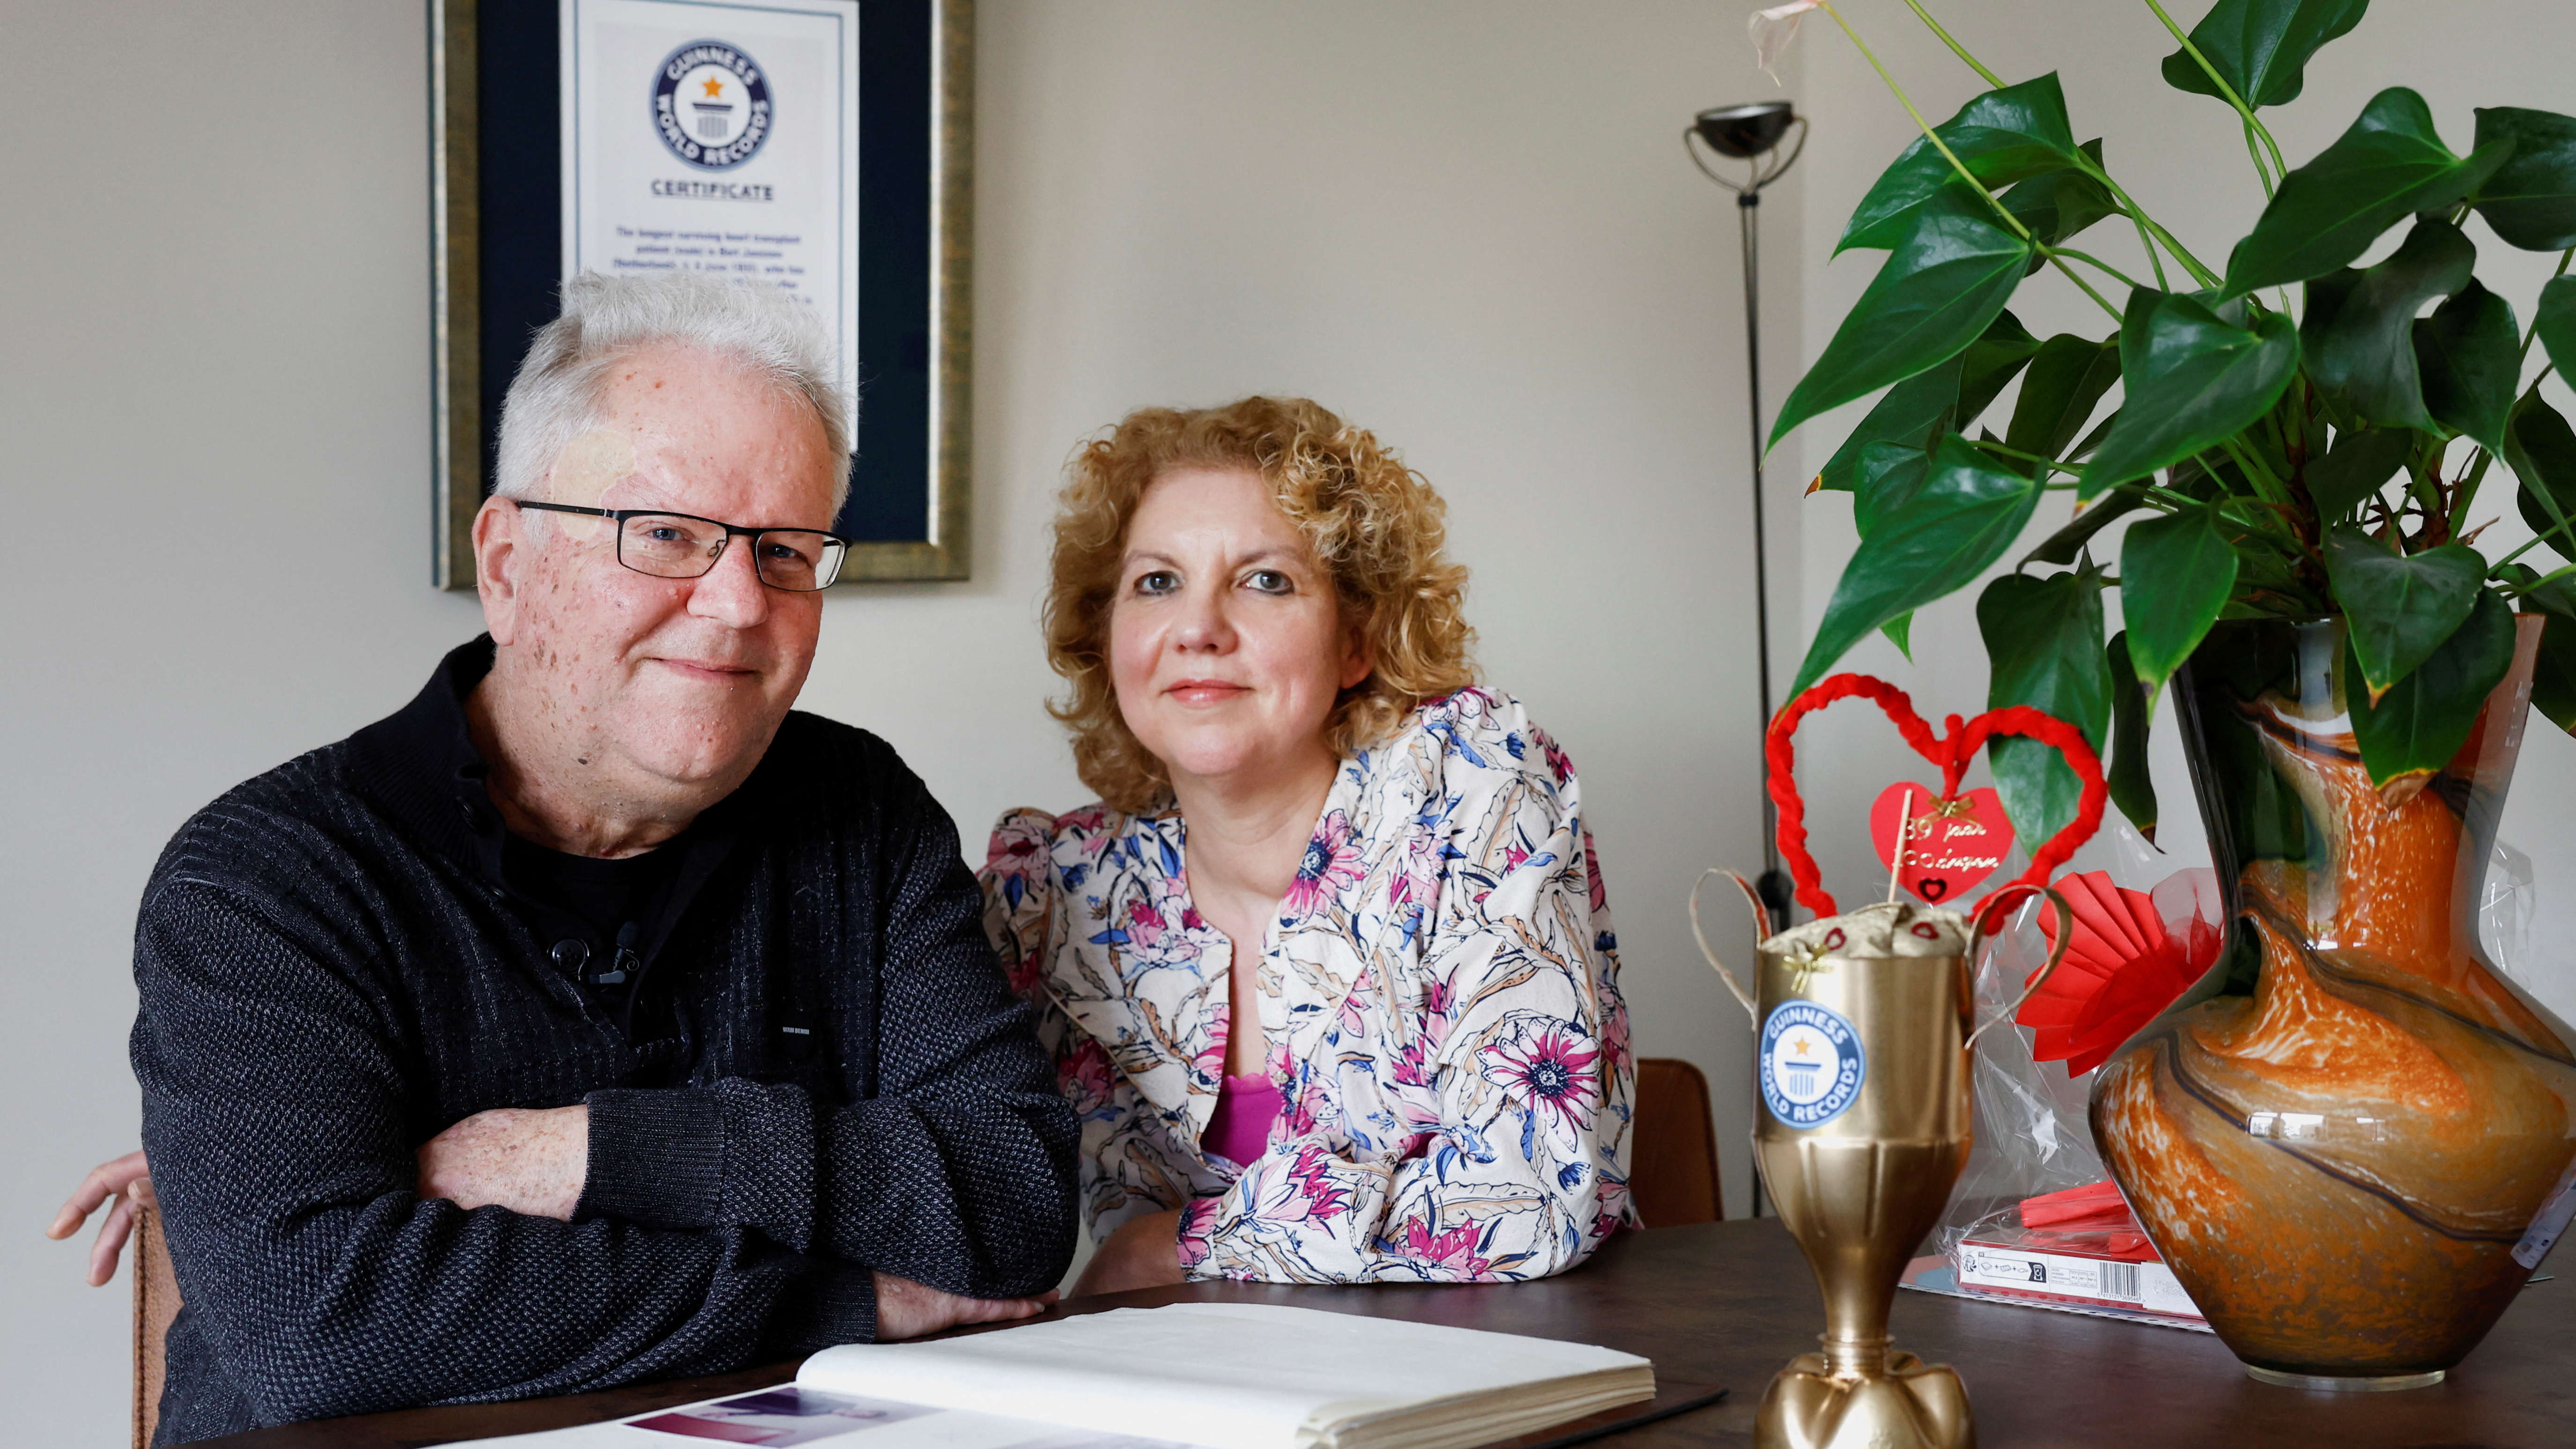 Bert Janssen, 57 years old, and his wife Petra in their house in Herkenbosch, Netherlands. /Piroschka van de Wouw/Reuters